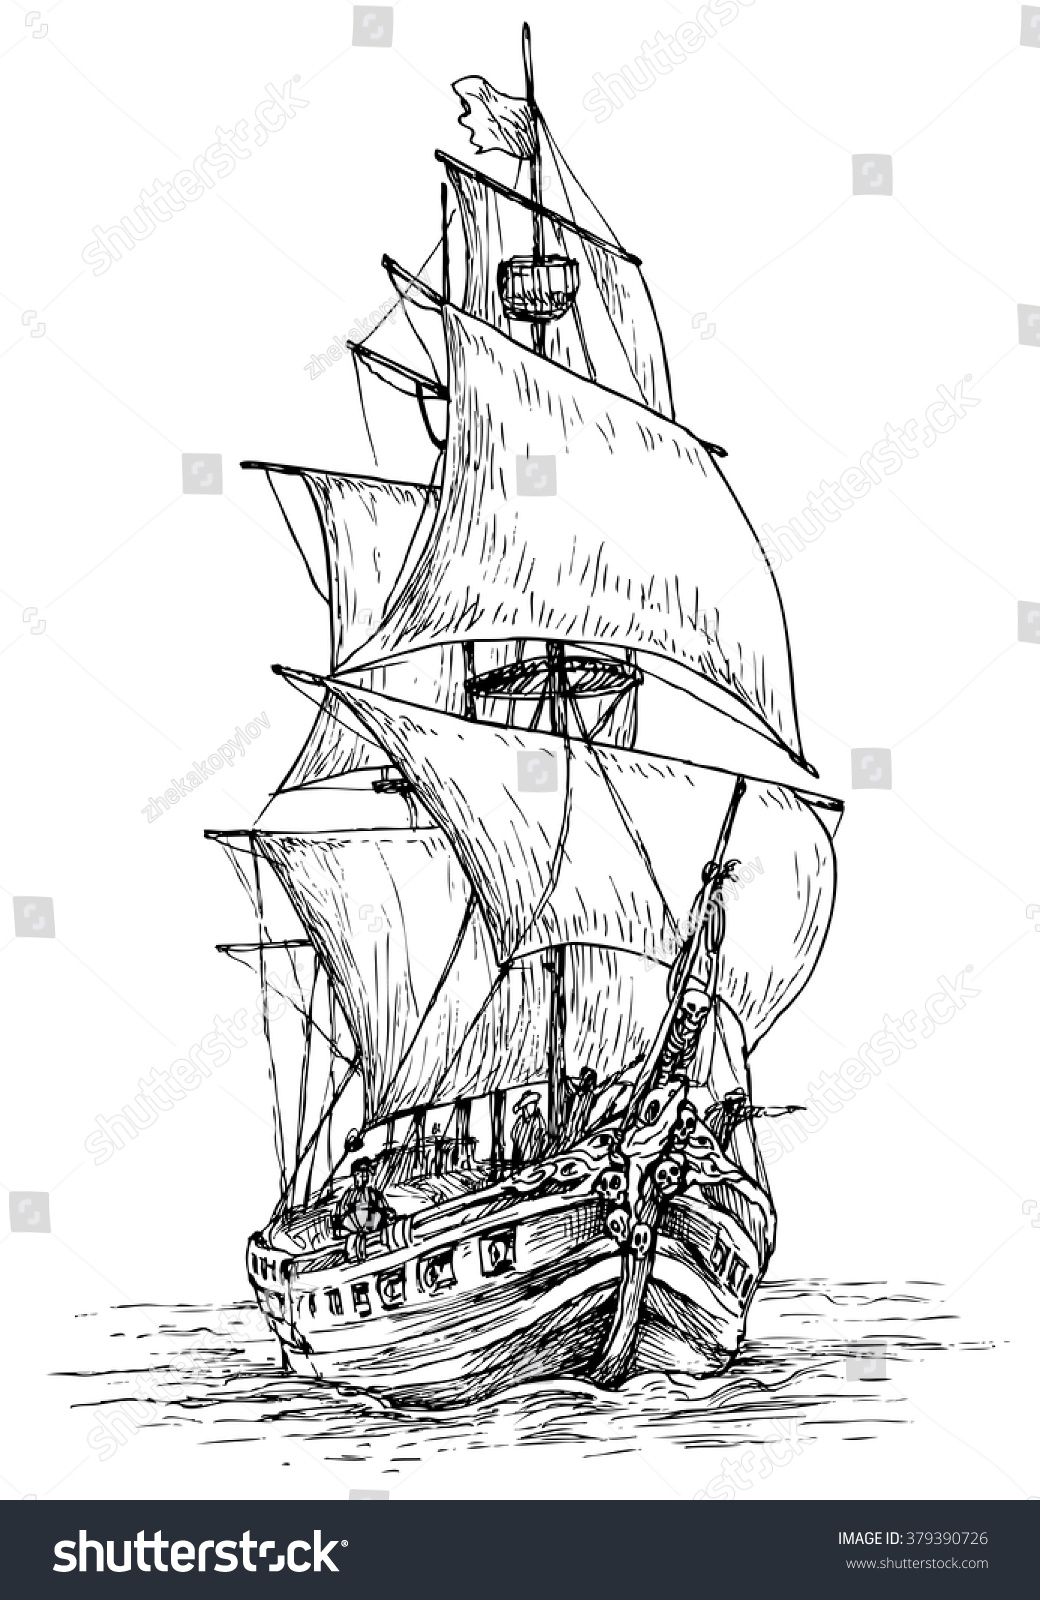 Рисунок фрегата с парусами